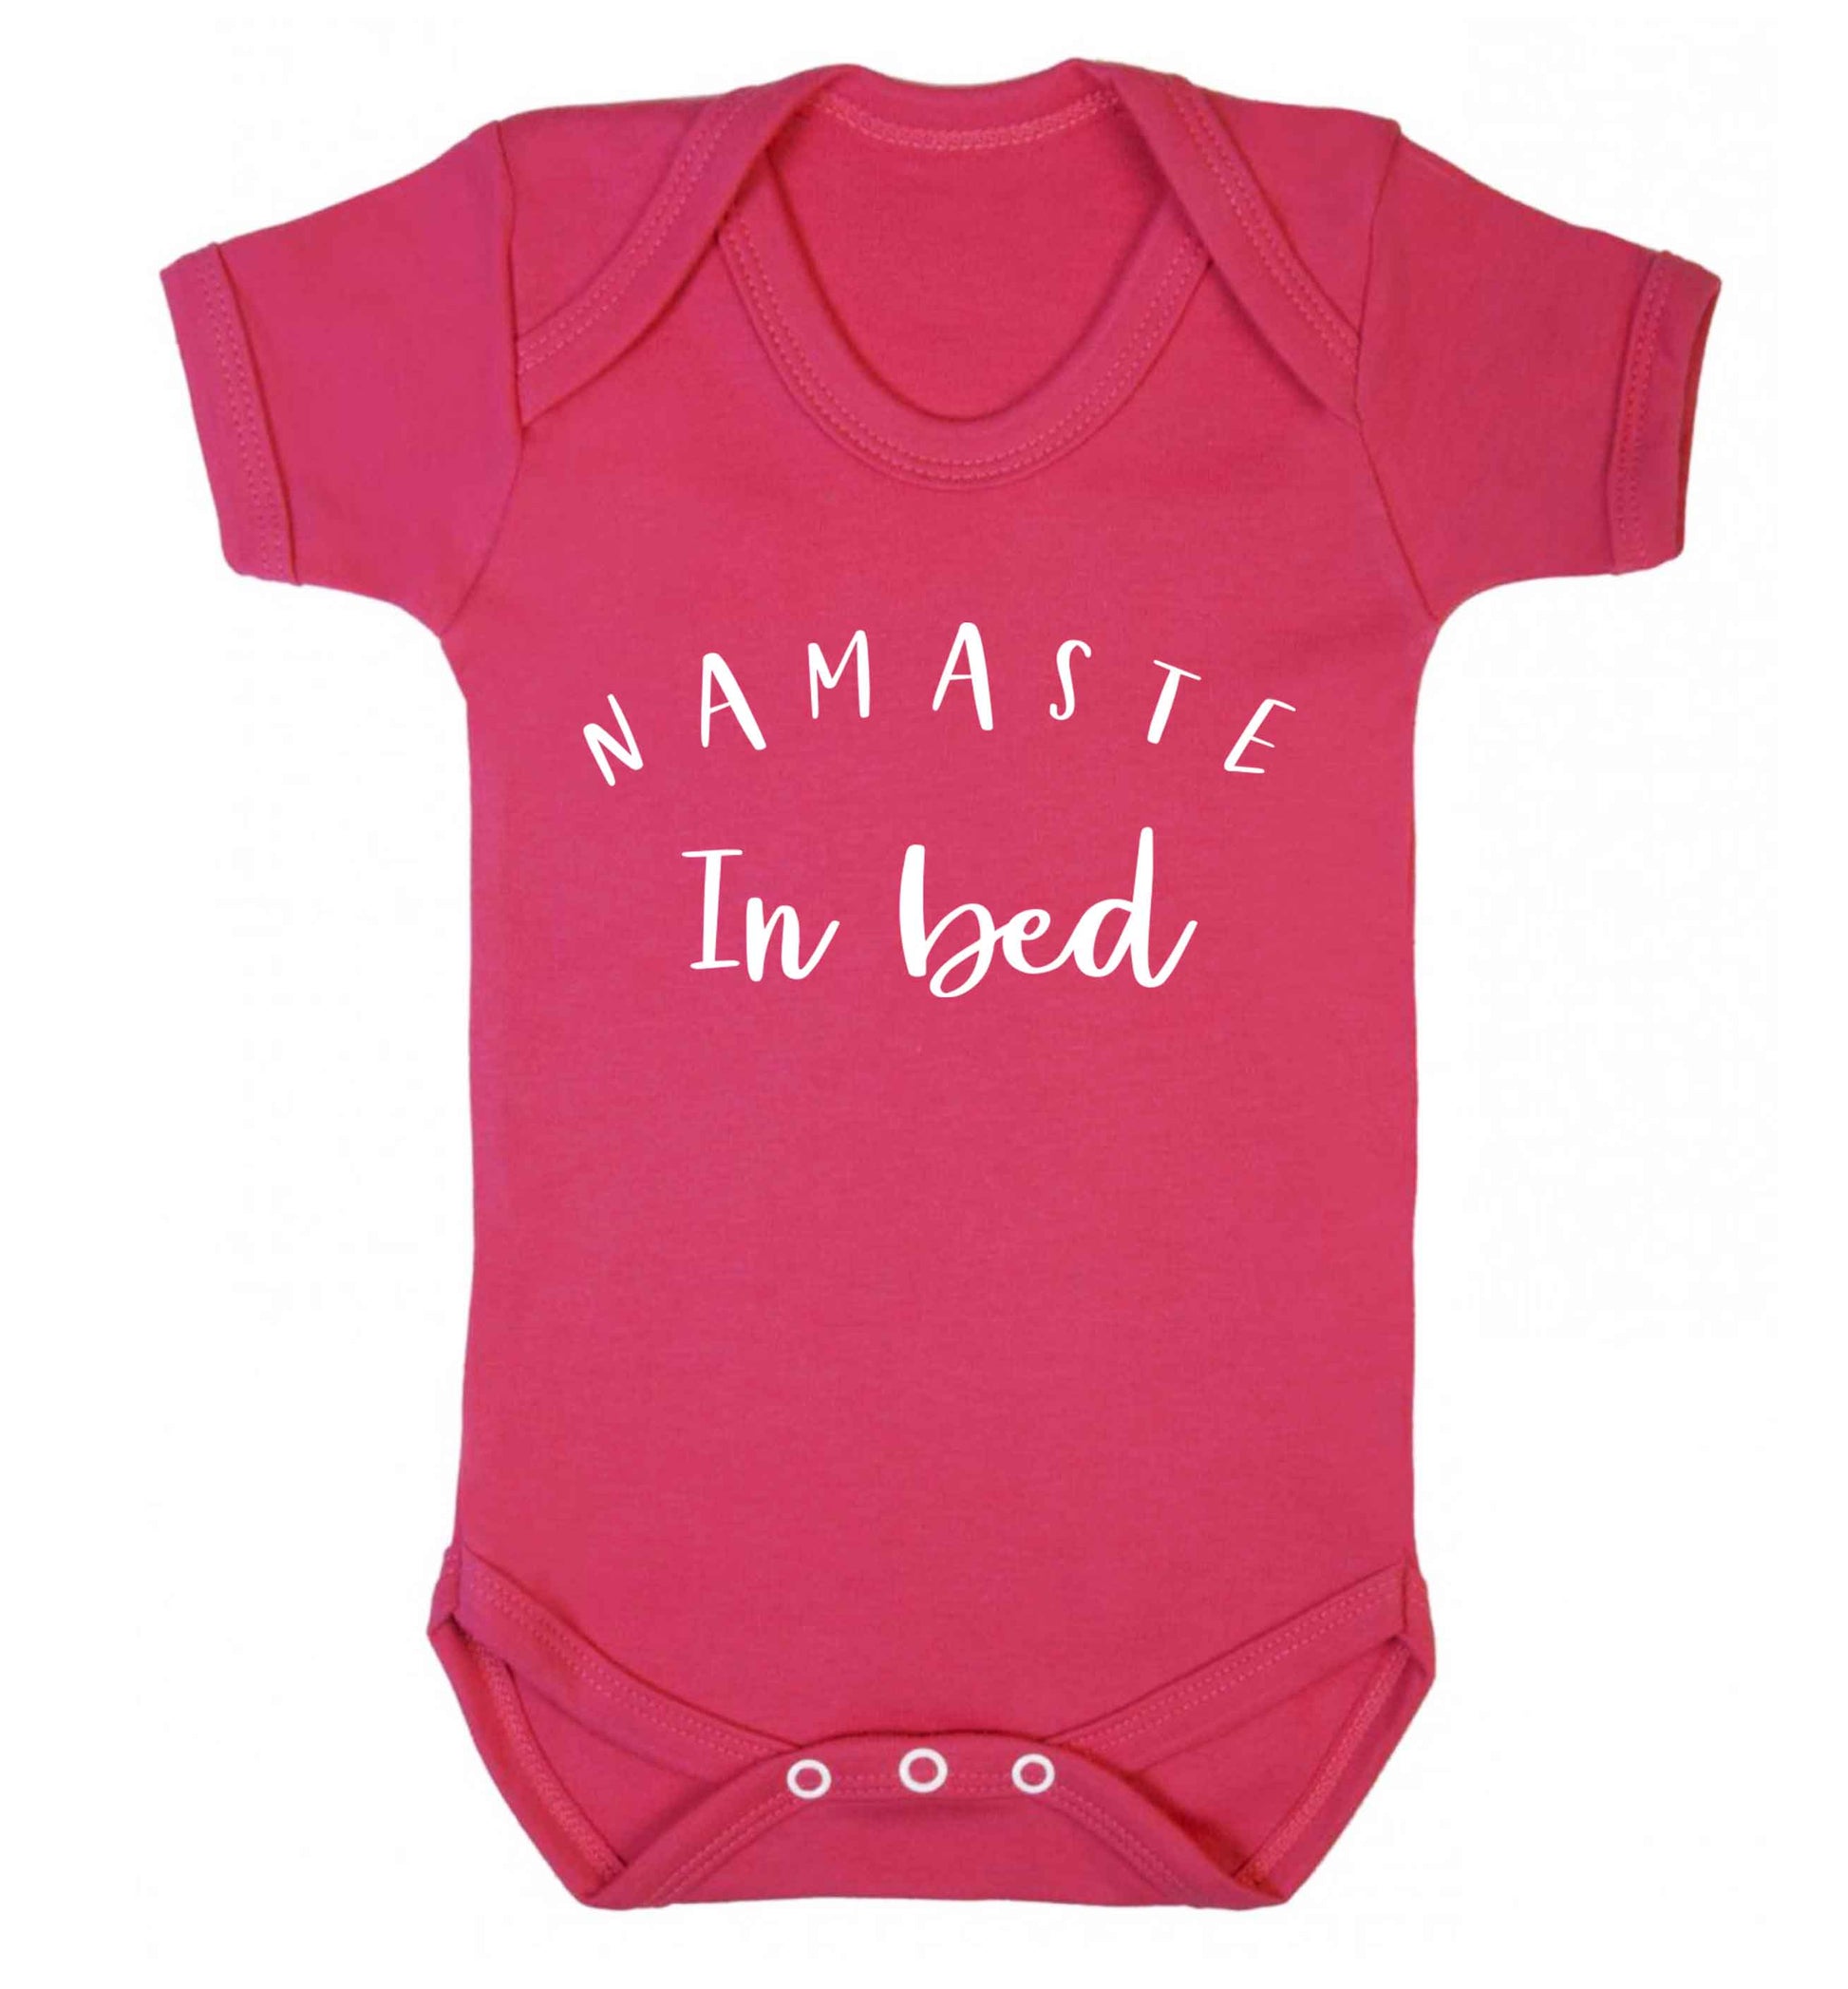 Namaste in bed Baby Vest dark pink 18-24 months